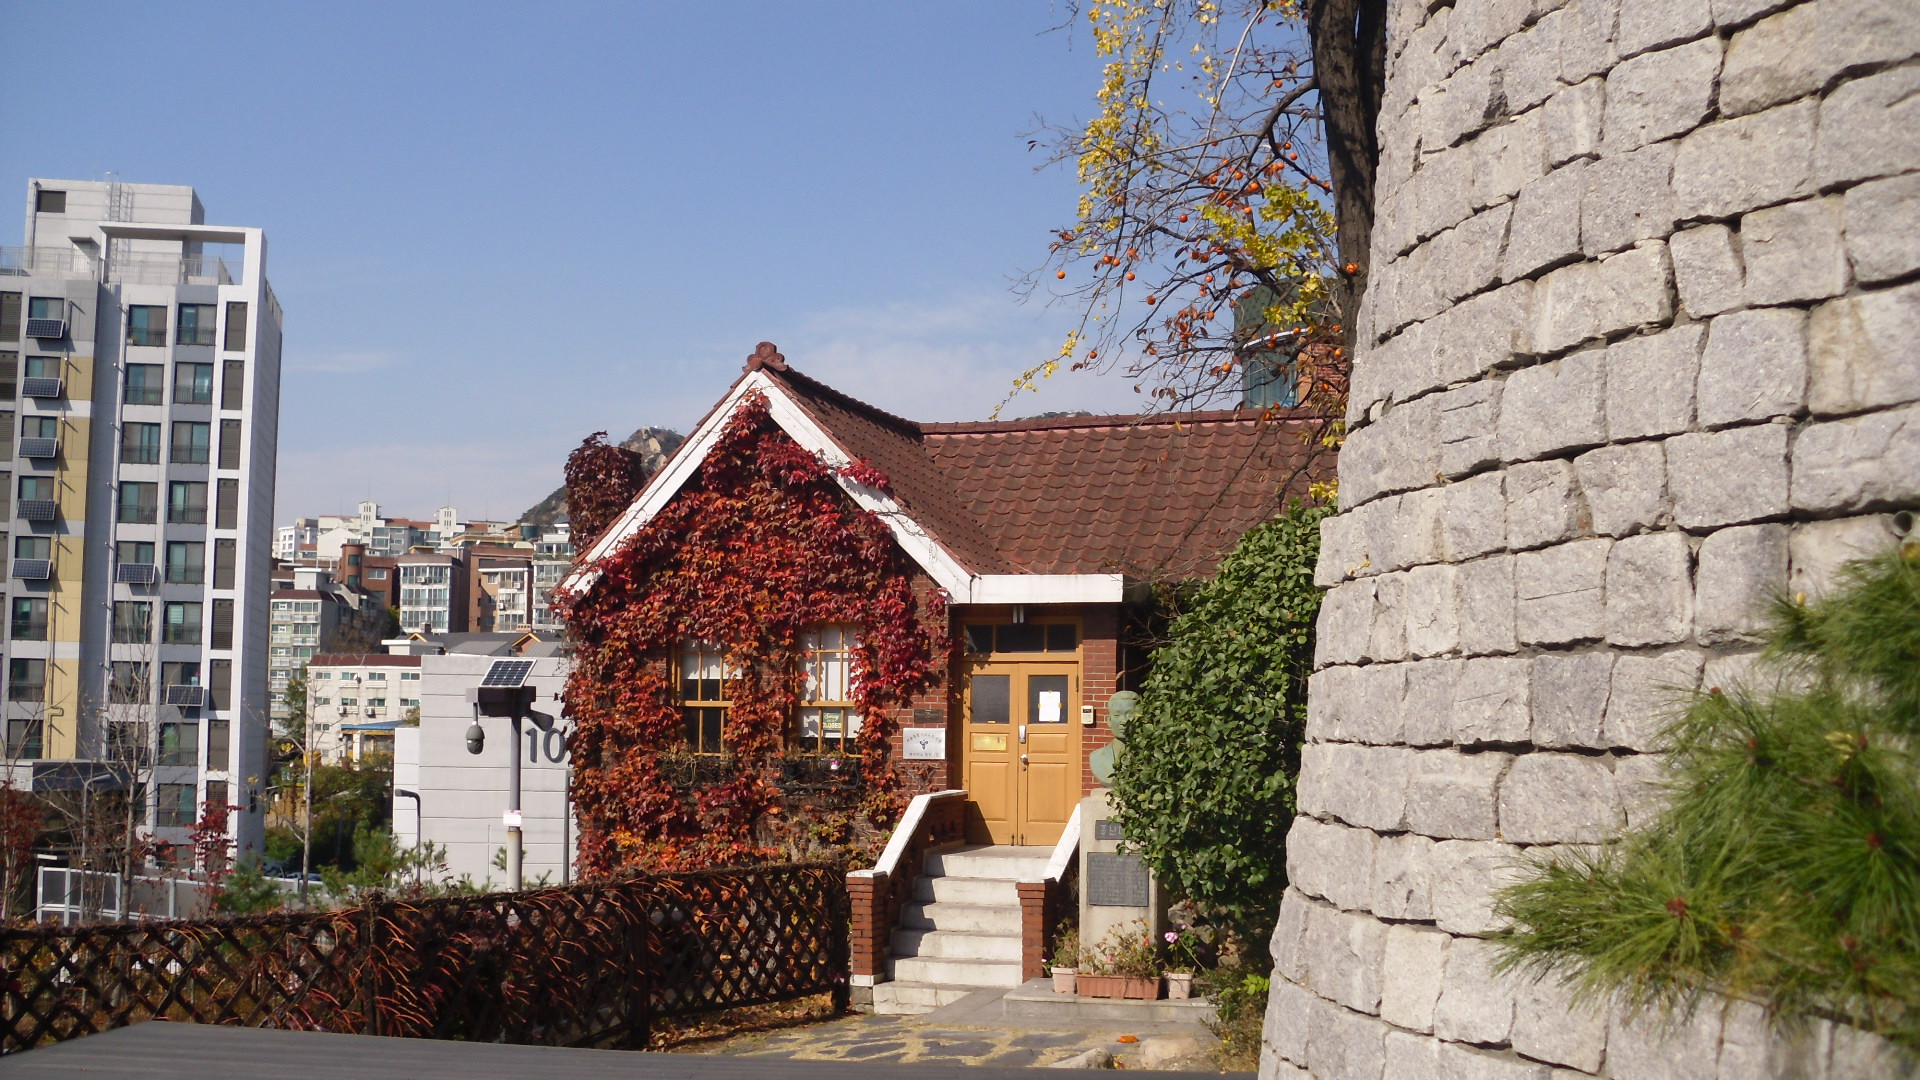 홍난파 가옥 : [등록문화재 제90호] '봉선화' '고향의 봄' 등으로 유명한 작곡가 난파 홍영후(1898~1941)가 살던 집이다.
1930년대 서양식 주택 양식이 잘 보존 되어 있다.